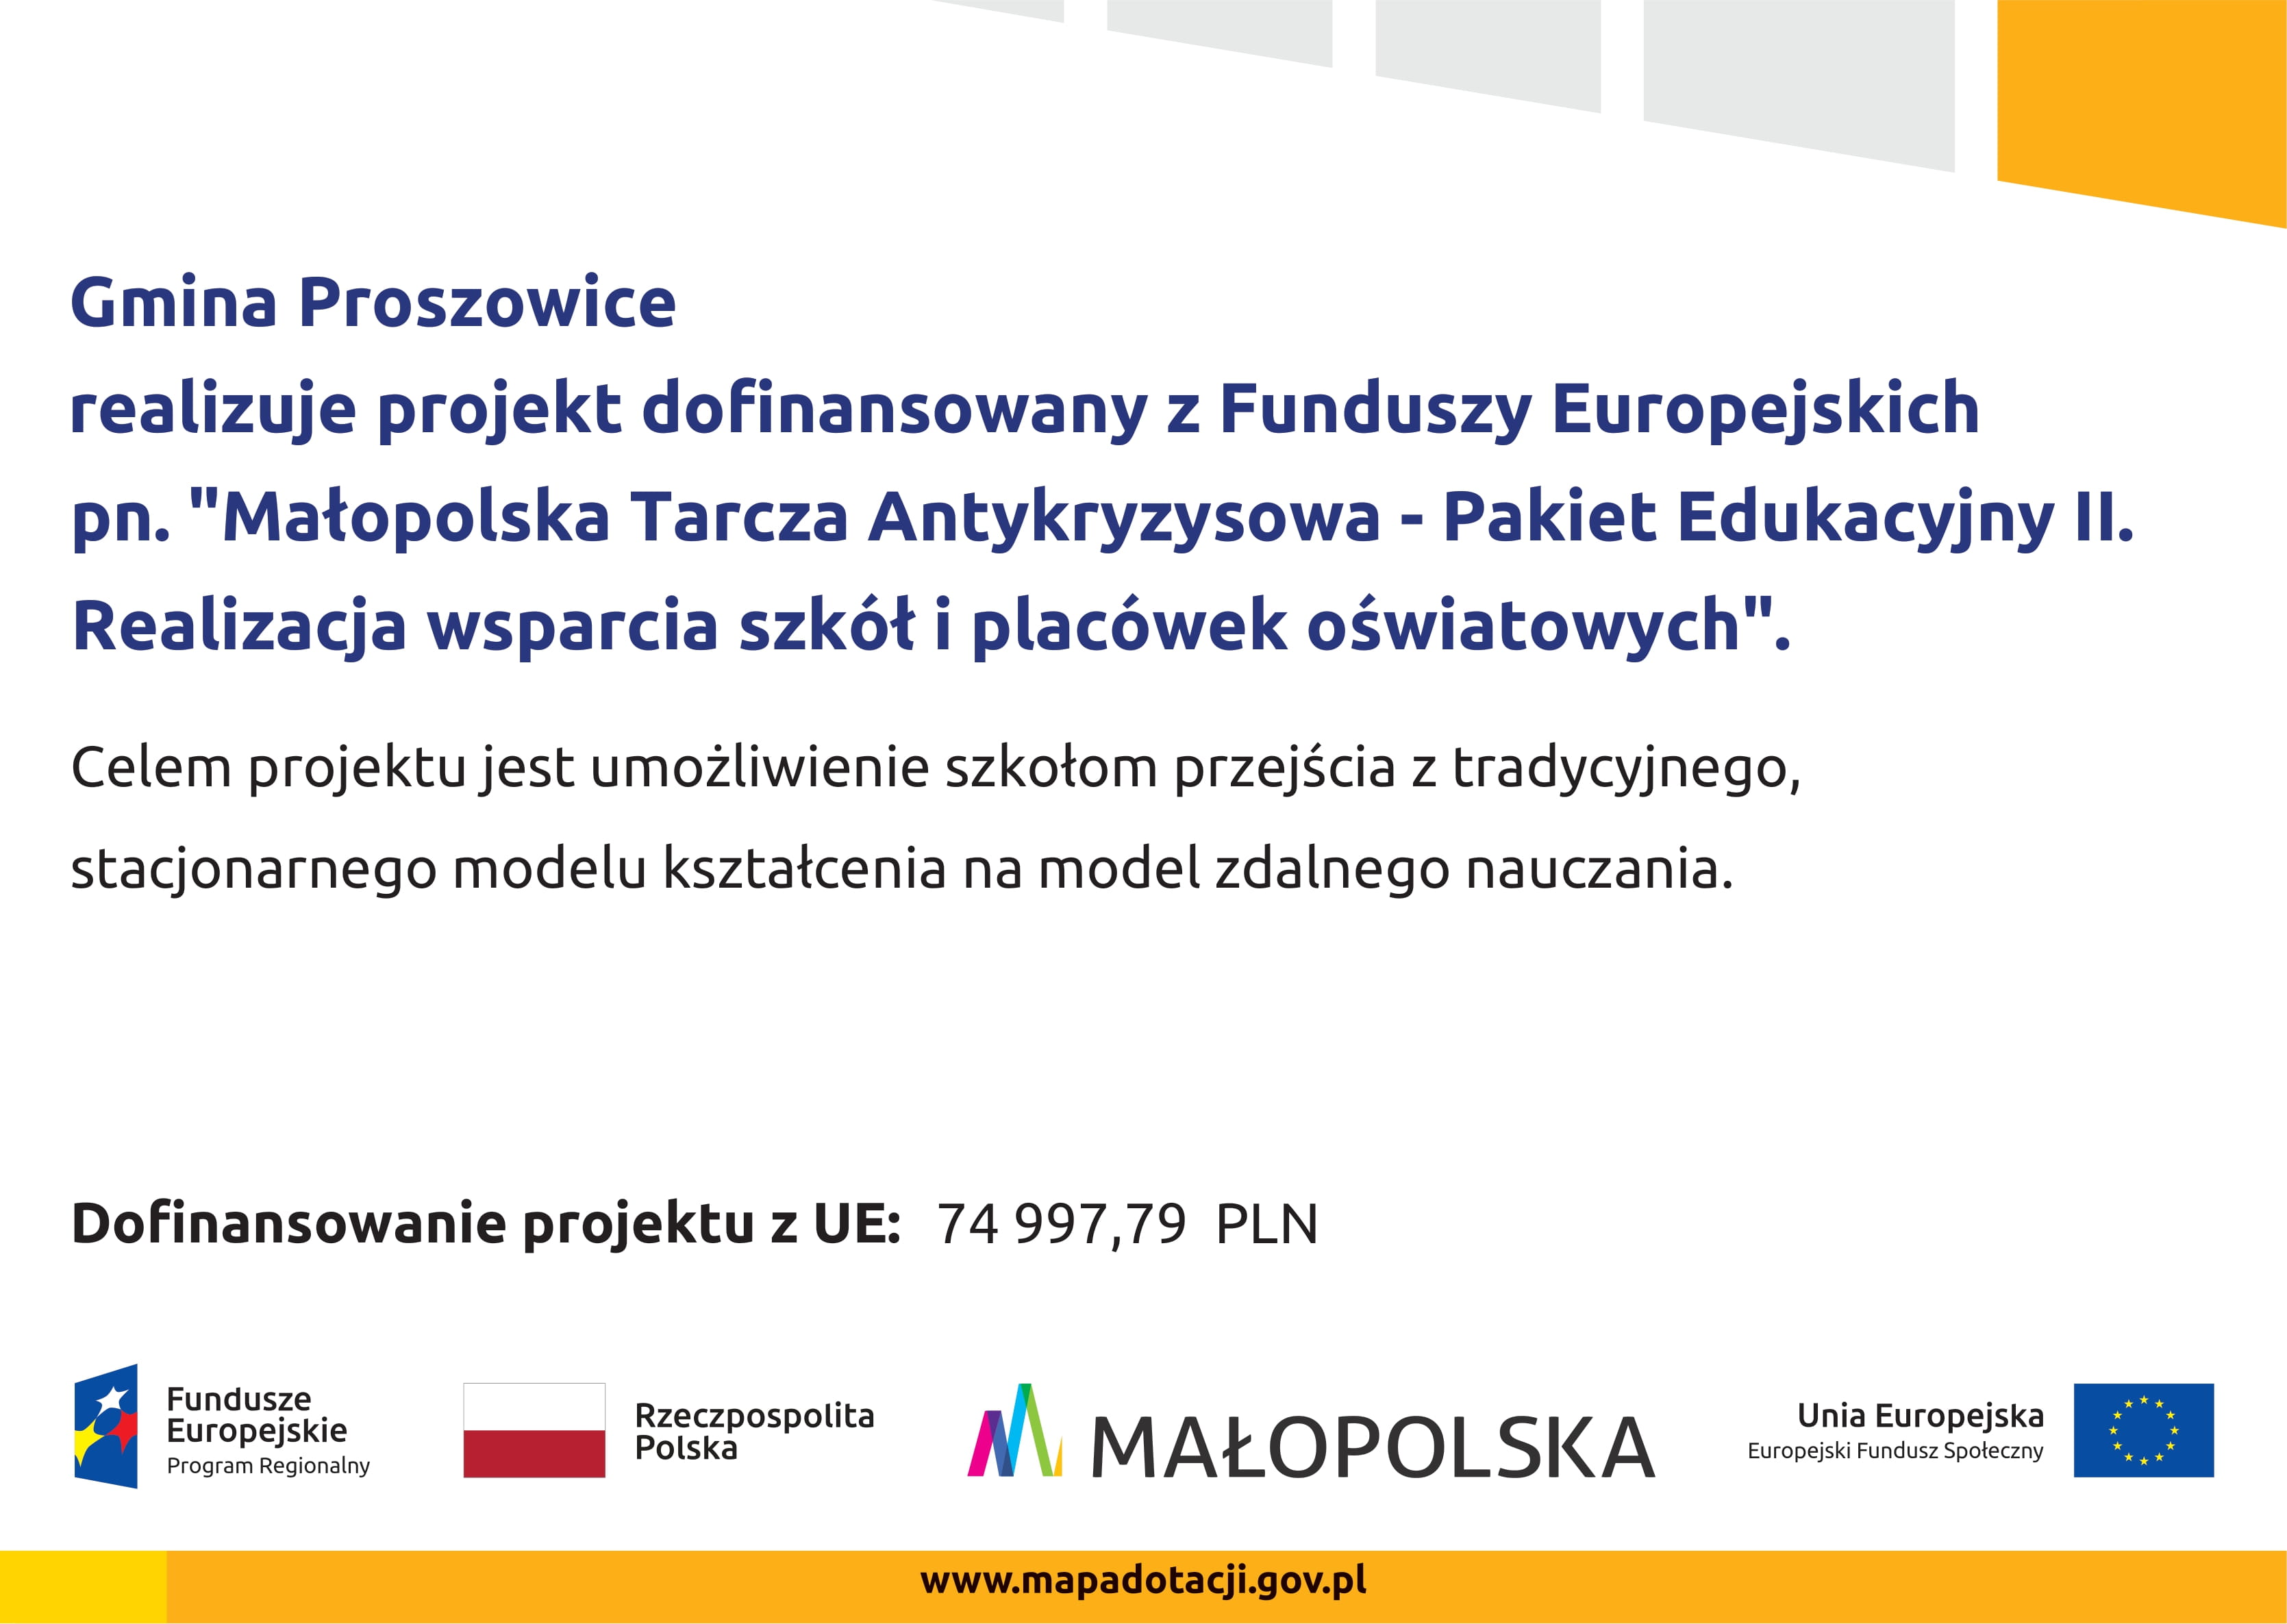 Plakat informujący o udziale Gminy Proszowice w projekcie dofinansowanym z Funduszy Europejskich.